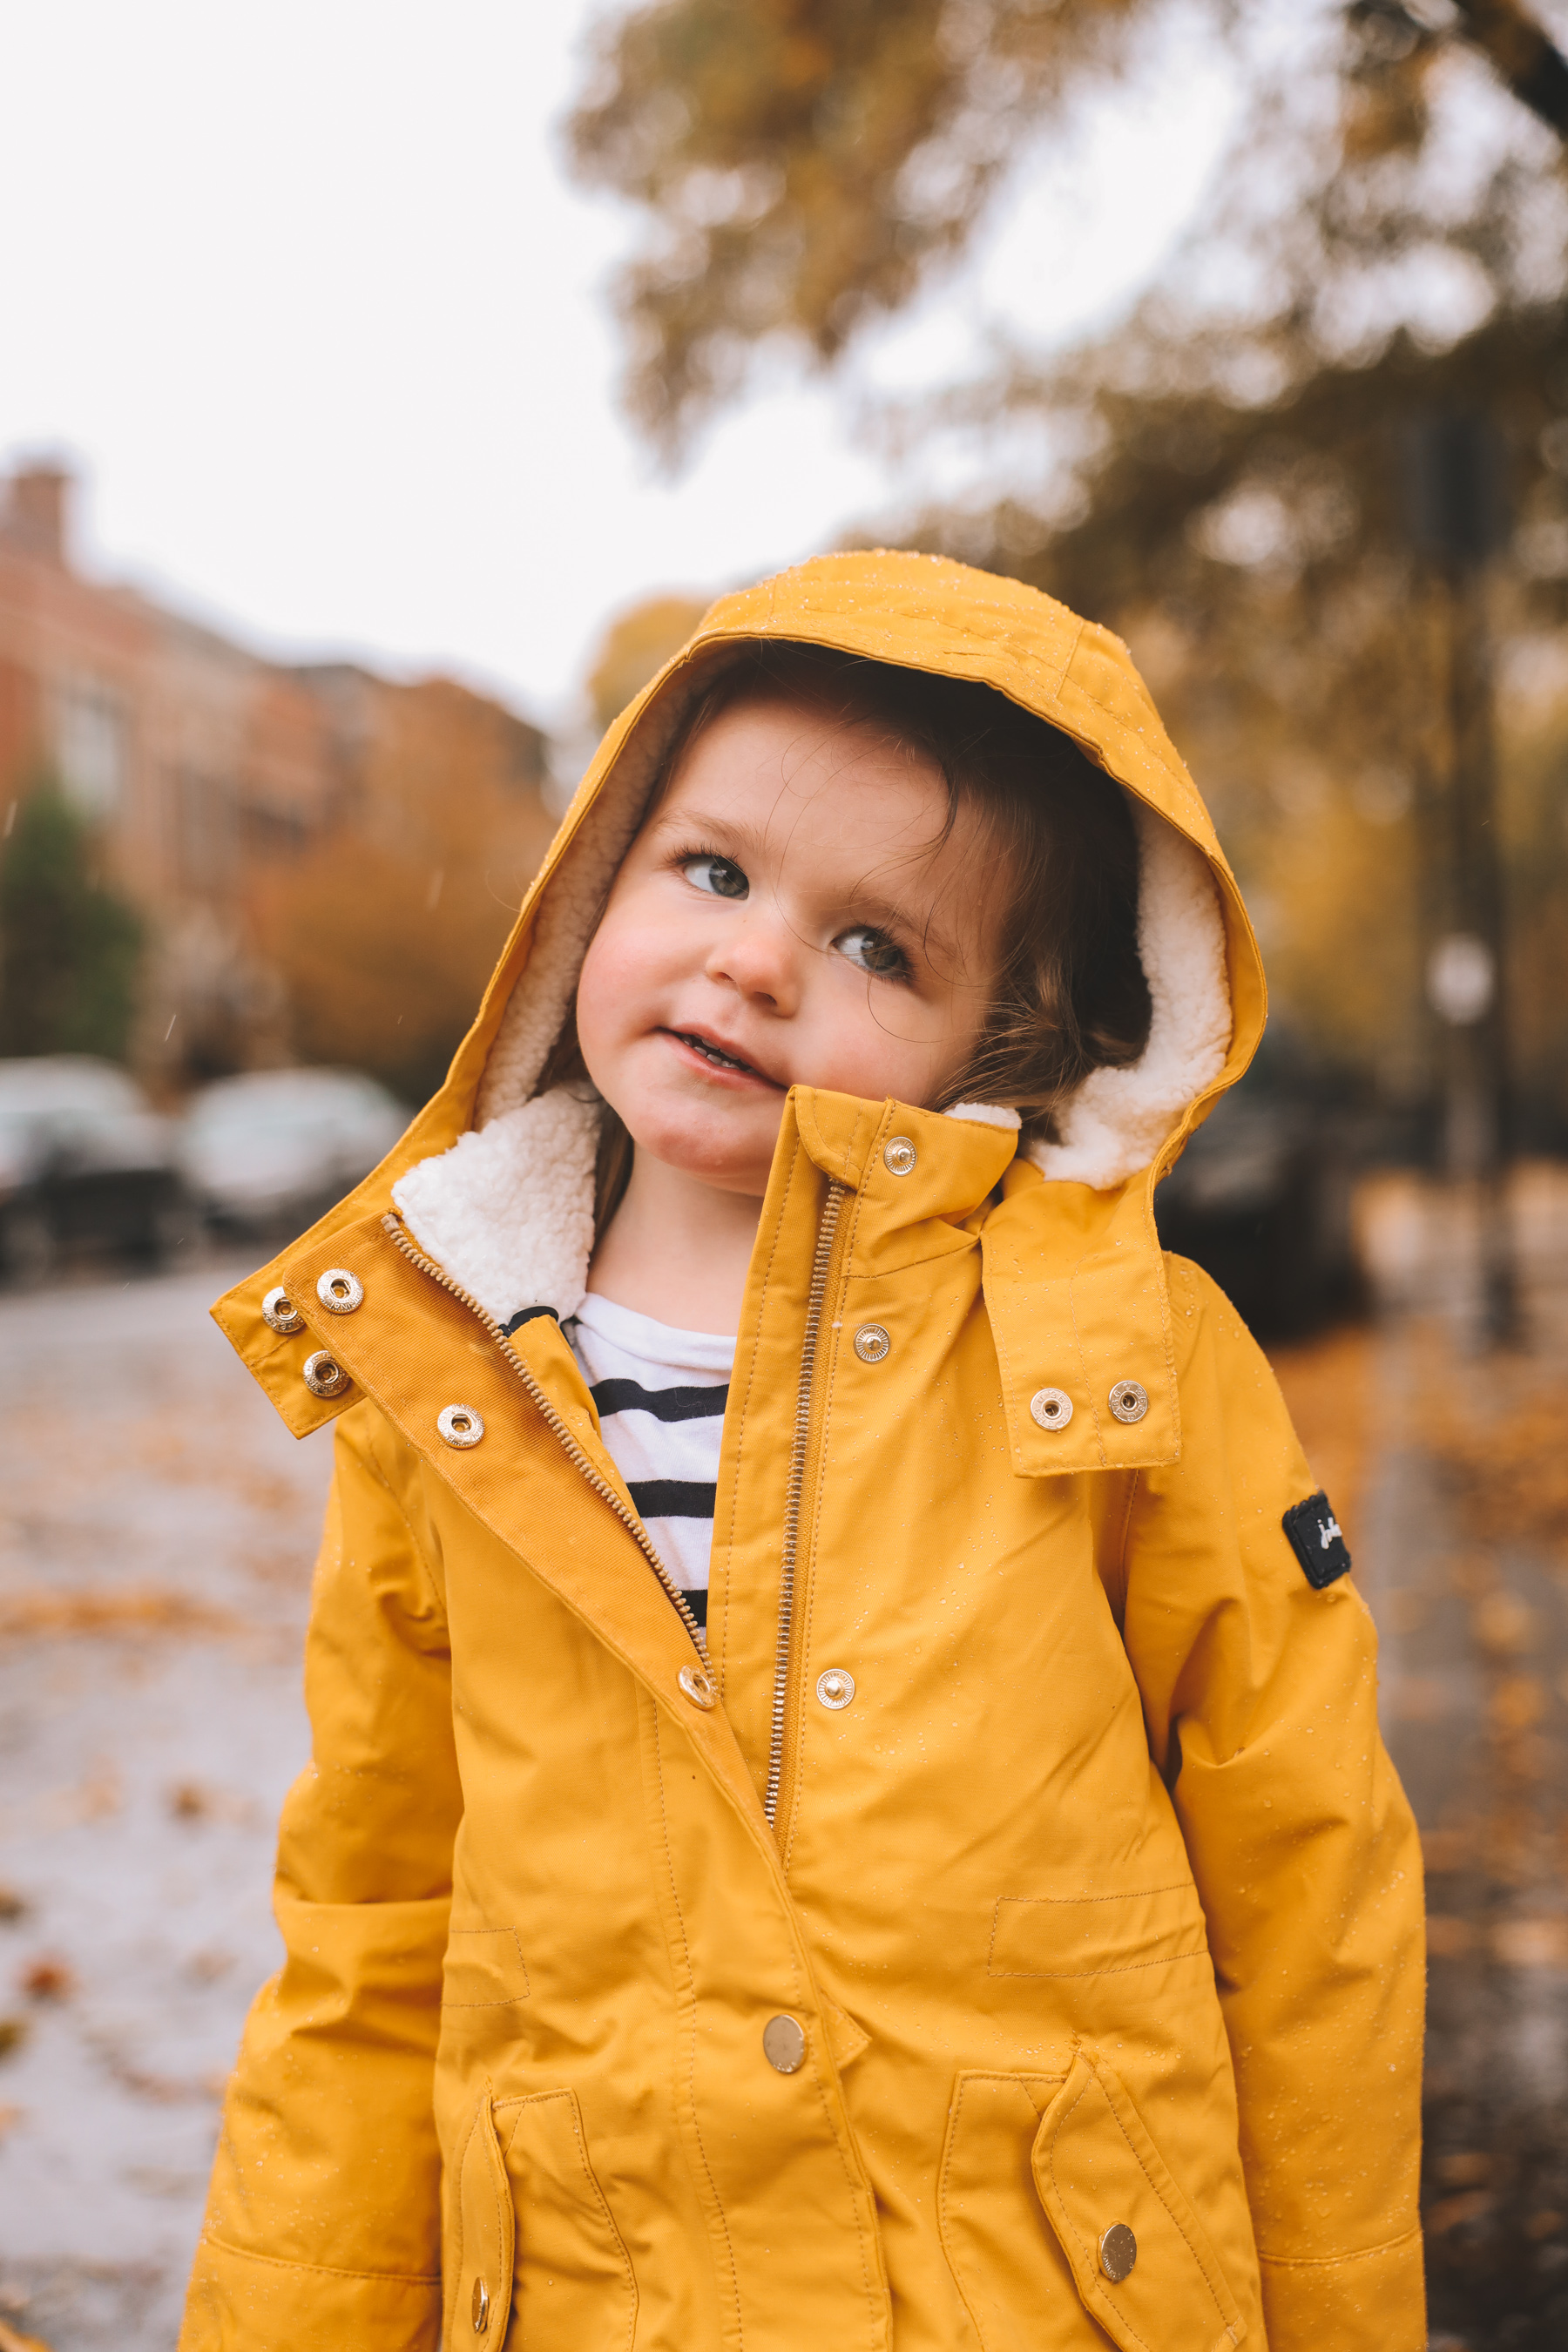 Annual Yellow Rain Coat Photos - shearling lining rain coat